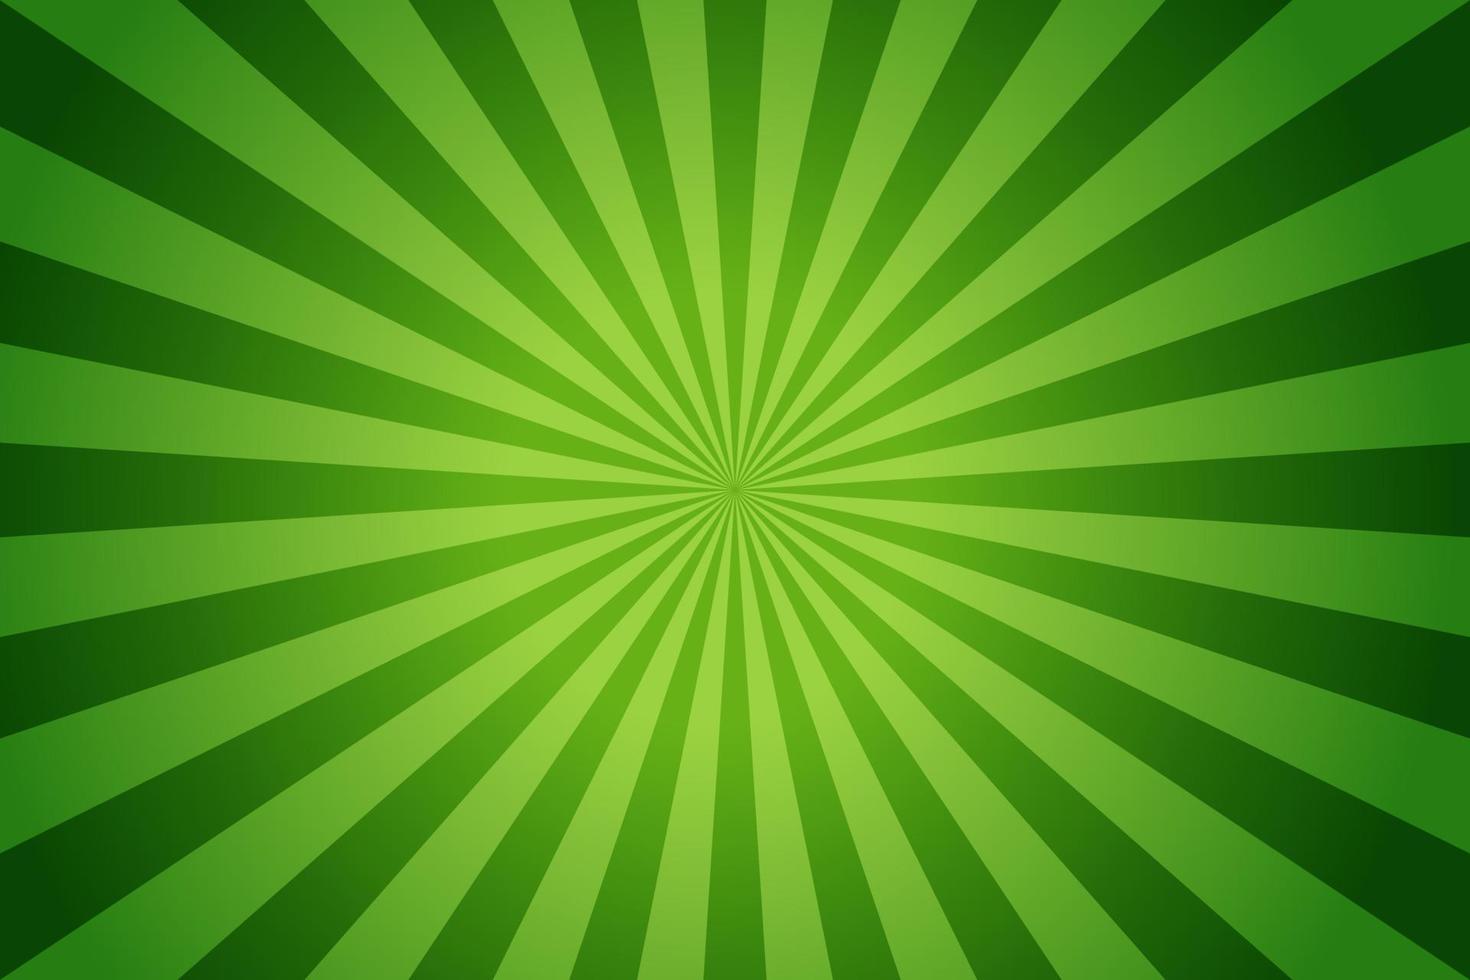 rayons de soleil style vintage rétro sur fond vert, arrière-plan motif sunburst. des rayons. illustration vectorielle de bannière d'été. fond d'écran abstrait sunburst pour modèle de publicité sur les réseaux sociaux d'entreprise. vecteur